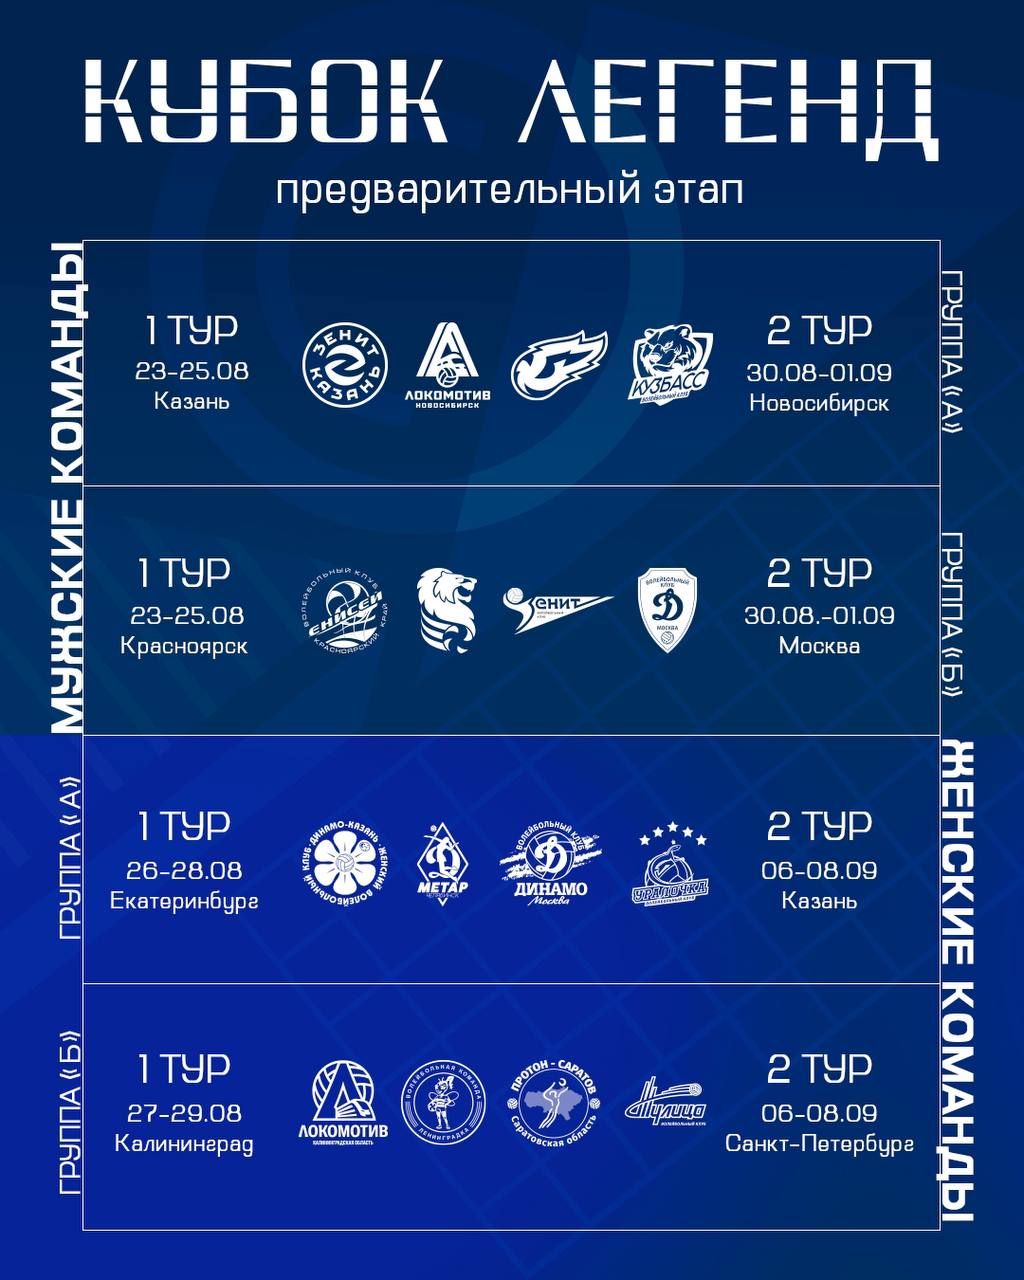 Расписание предварительного этапа Кубка Легенд